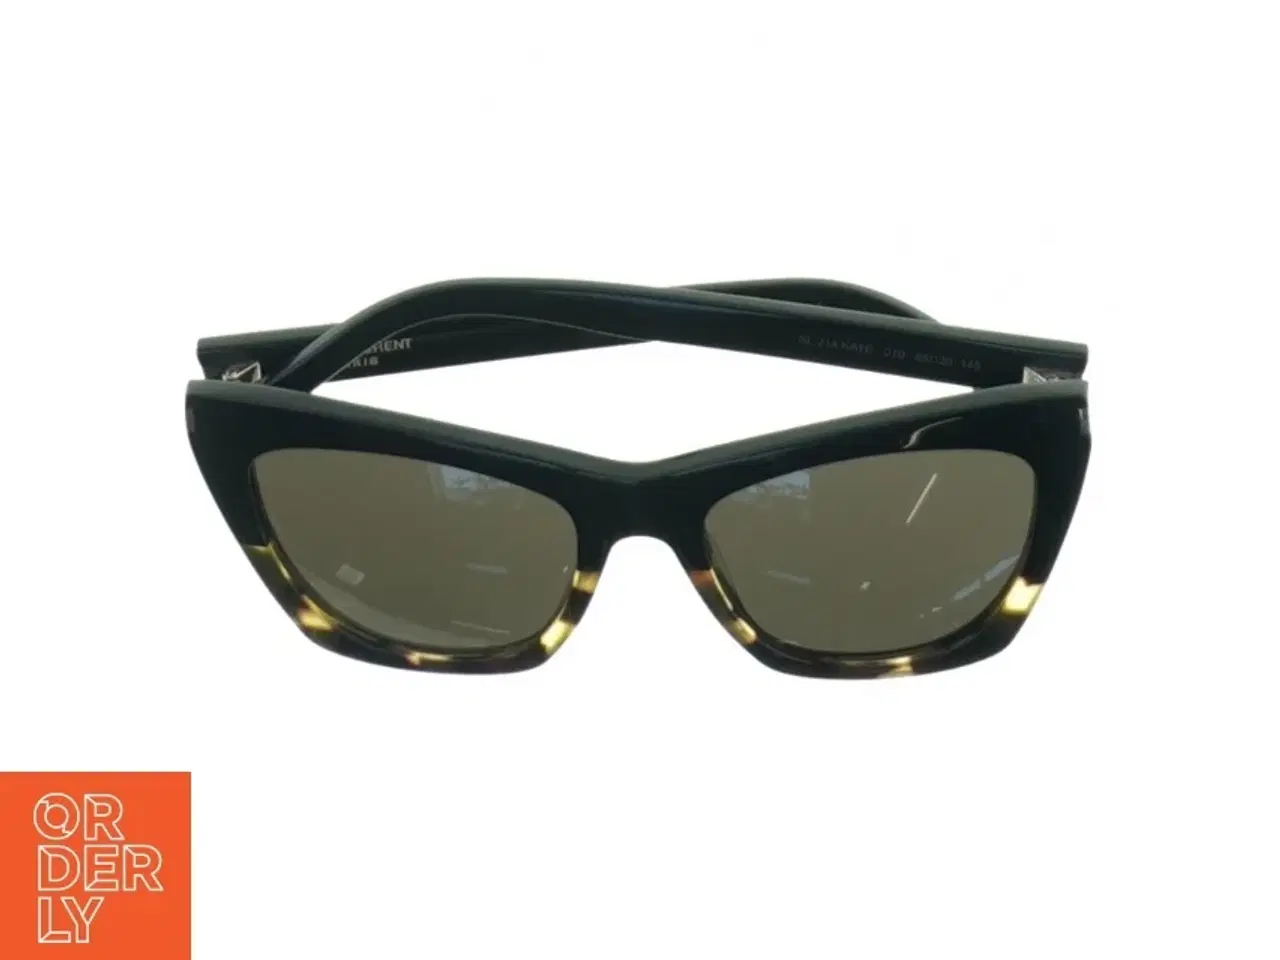 Billede 1 - Solbriller fra Saint Laurent Paris (str. 15 x 6 cm)